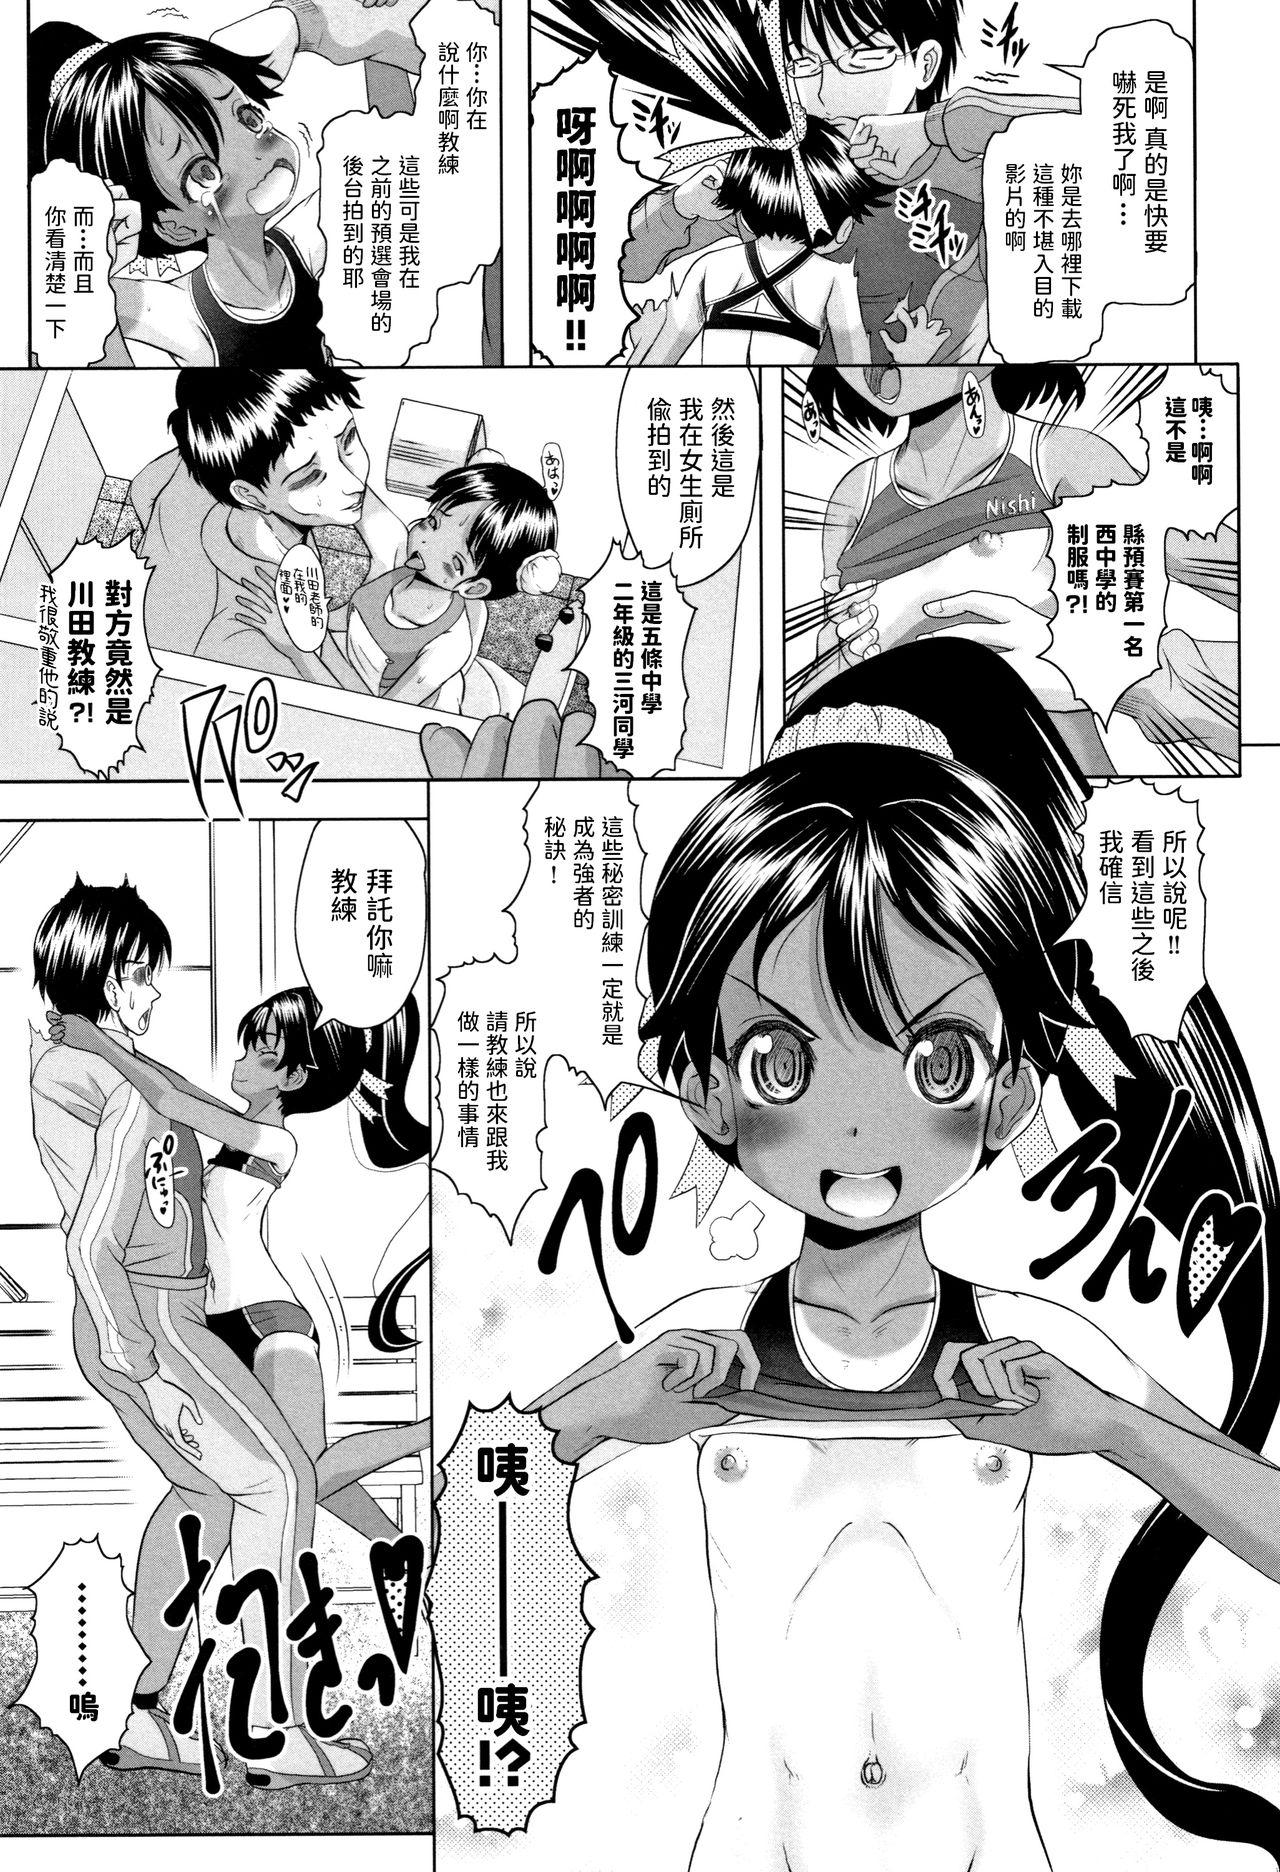 Chibola Arima to Himitsu no Tokkun Shiyo! Spandex - Page 5